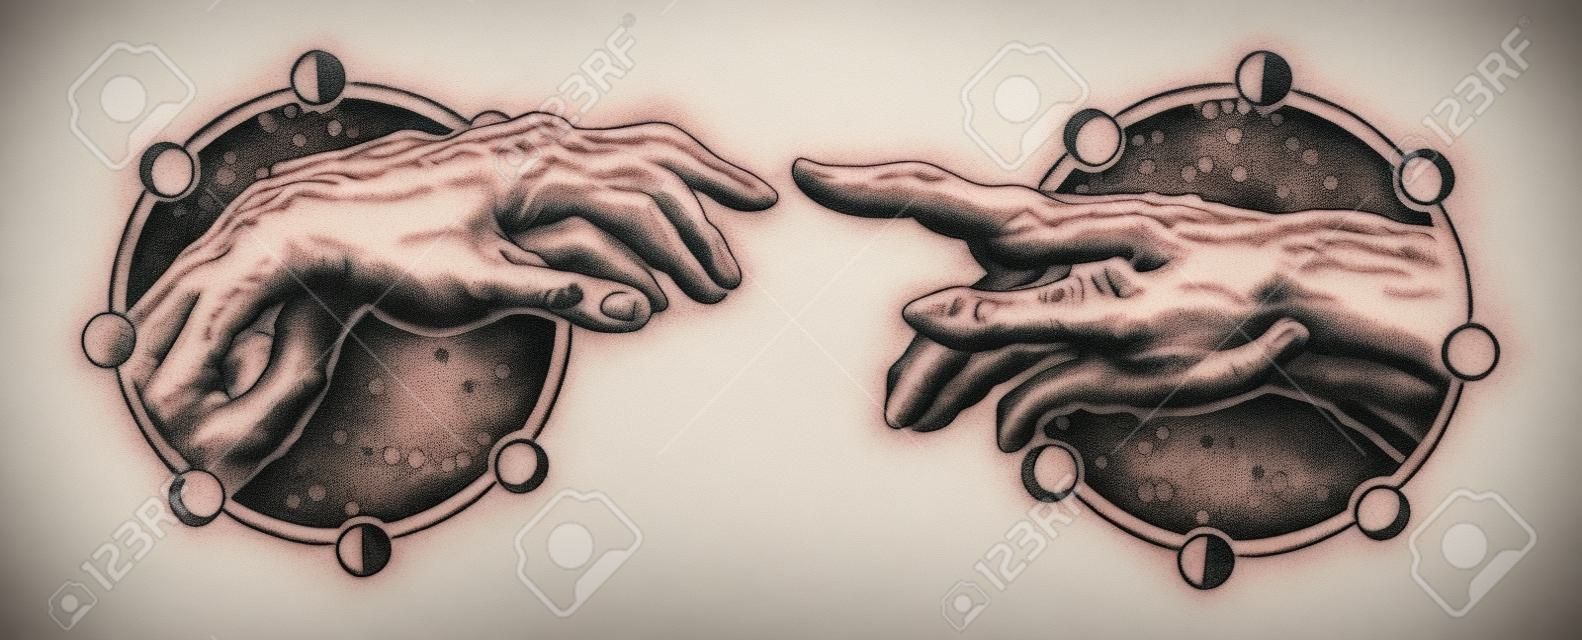 Michelangelo Gods aanraking. Menselijke handen raken met vingers tatoeage en t-shirt ontwerp. Handen tatoeage Renaissance. Goden en Adam, symbool van spiritualiteit, religie, verbinding en interactie